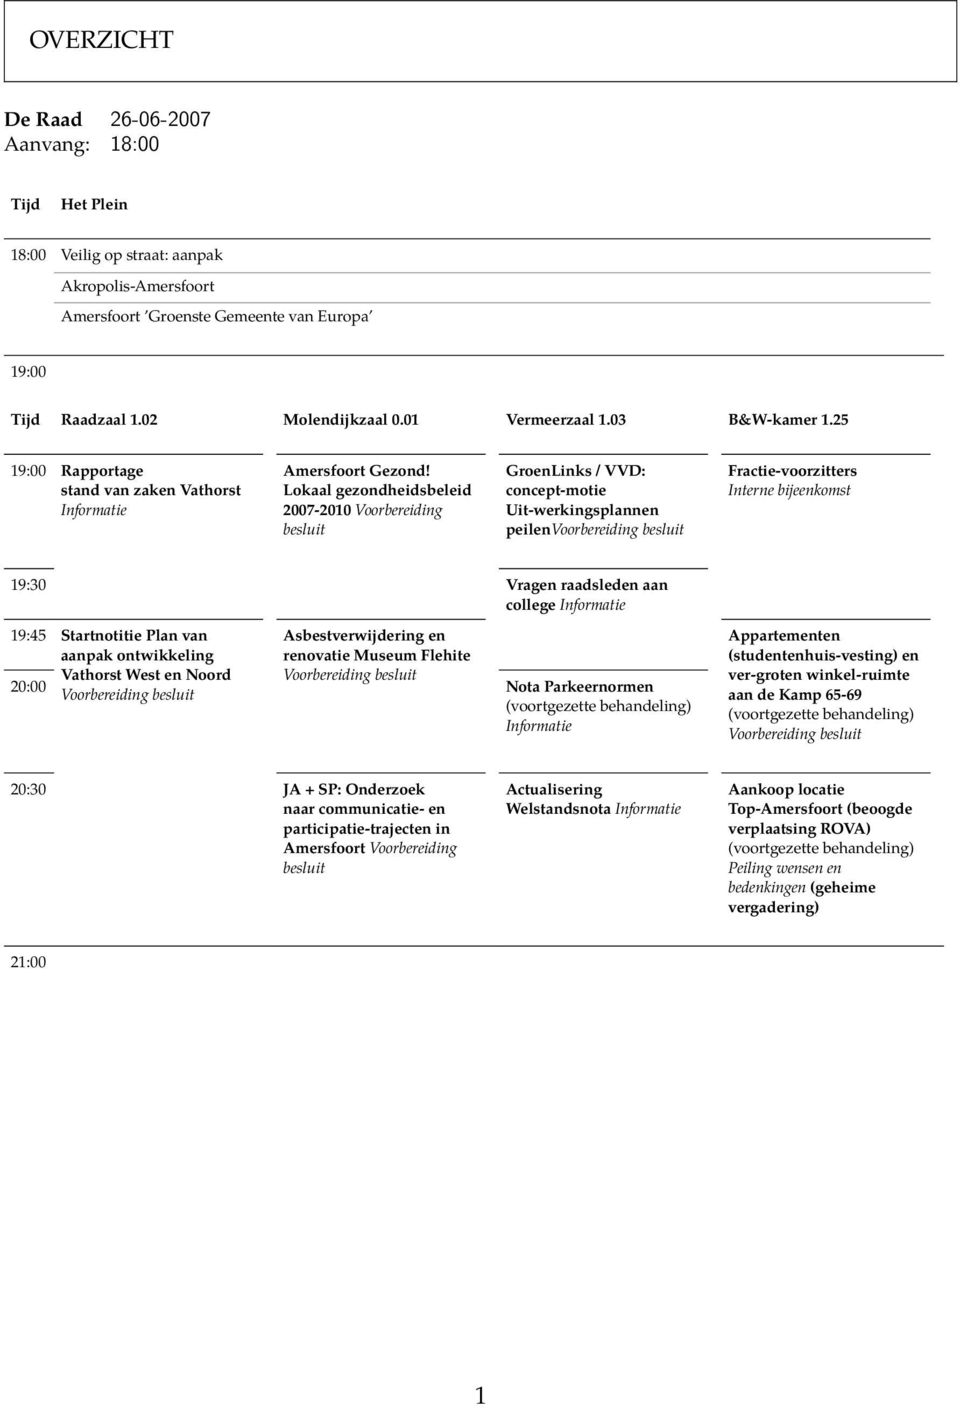 Lokaal gezondheidsbeleid 2007-2010 Voorbereiding besluit GroenLinks / VVD: concept-motie Uit-werkingsplannen peilenvoorbereiding besluit Fractie-voorzitters Interne bijeenkomst 19:30 Vragen